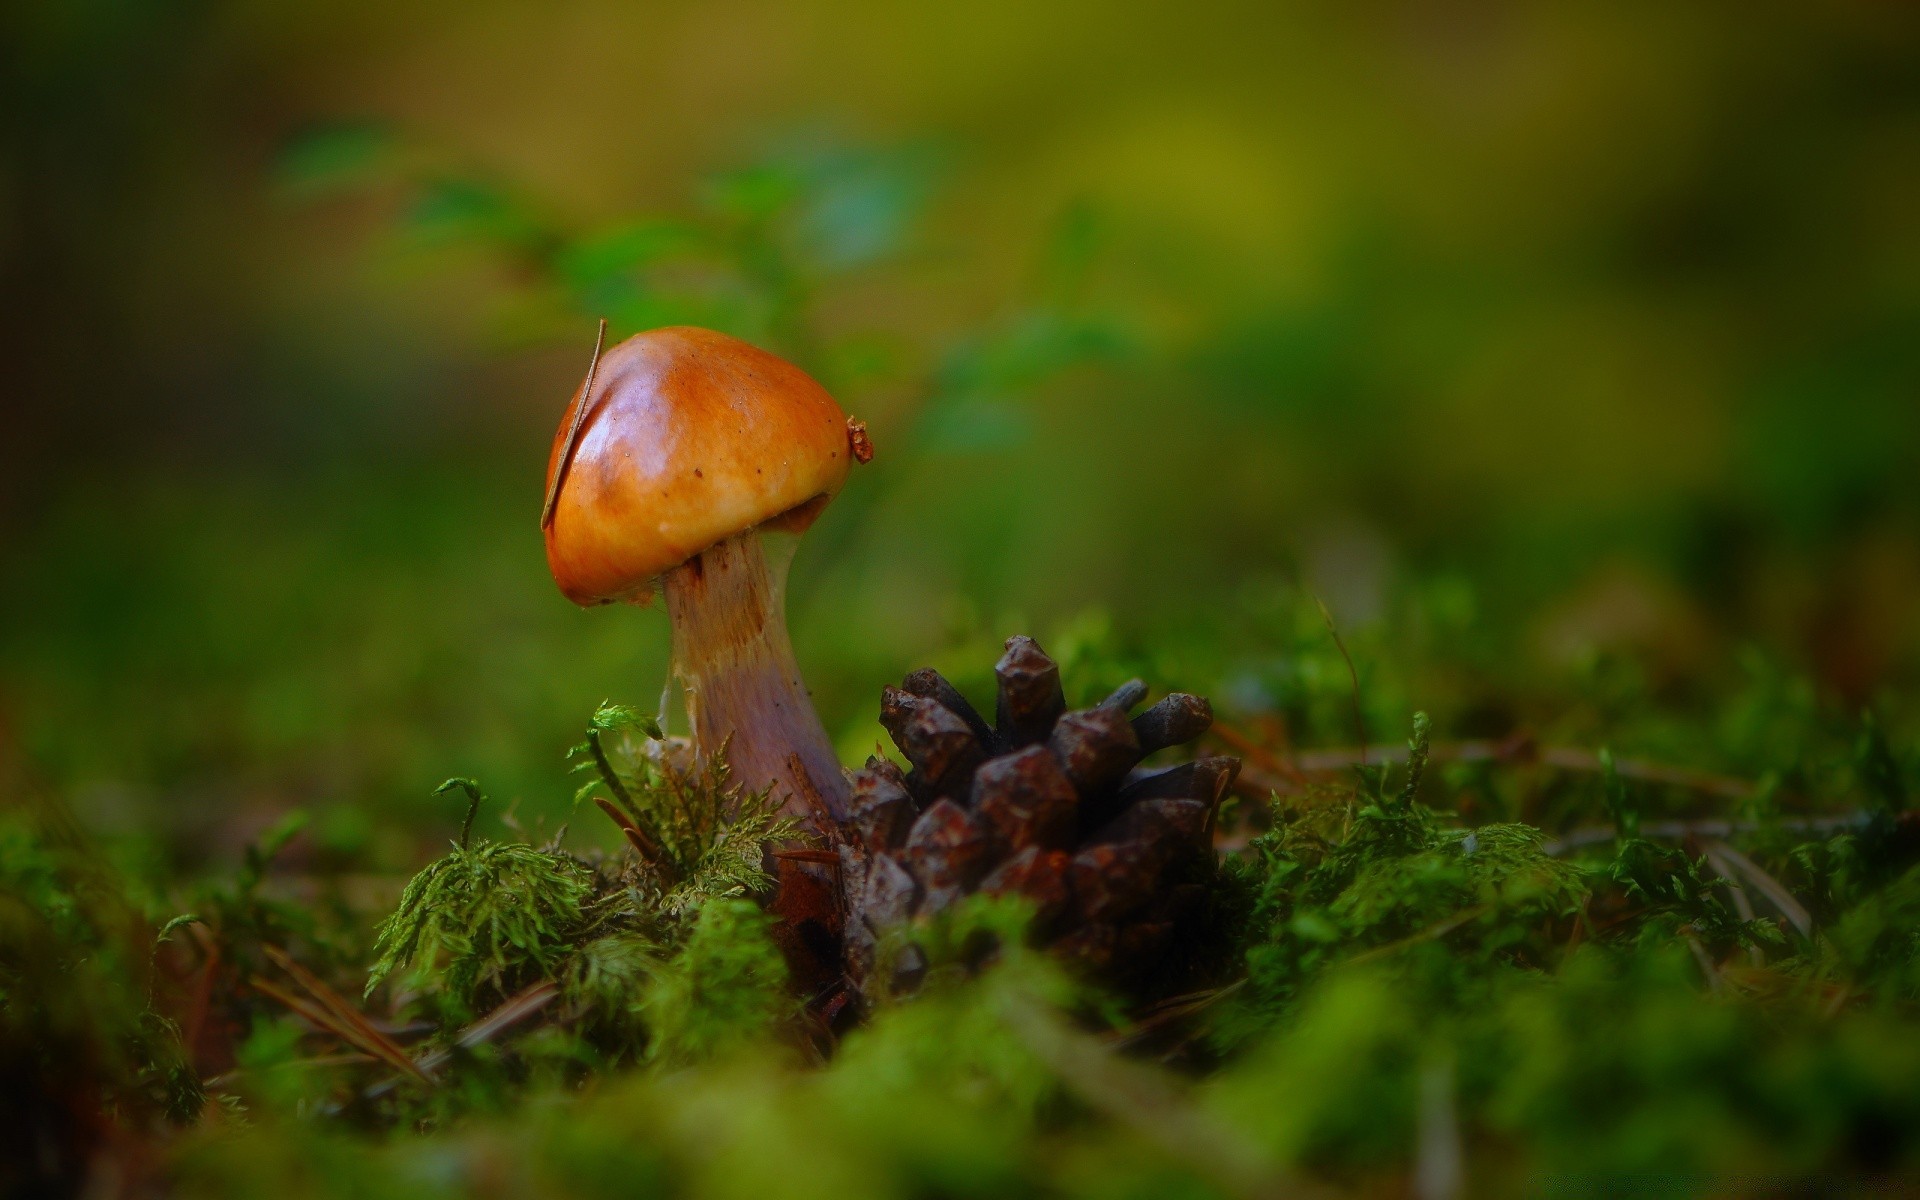 макросъемка грибок гриб осень боровик природа трава мох поганки спорово еда съедобные лист на открытом воздухе древесины дикий рост яд лето